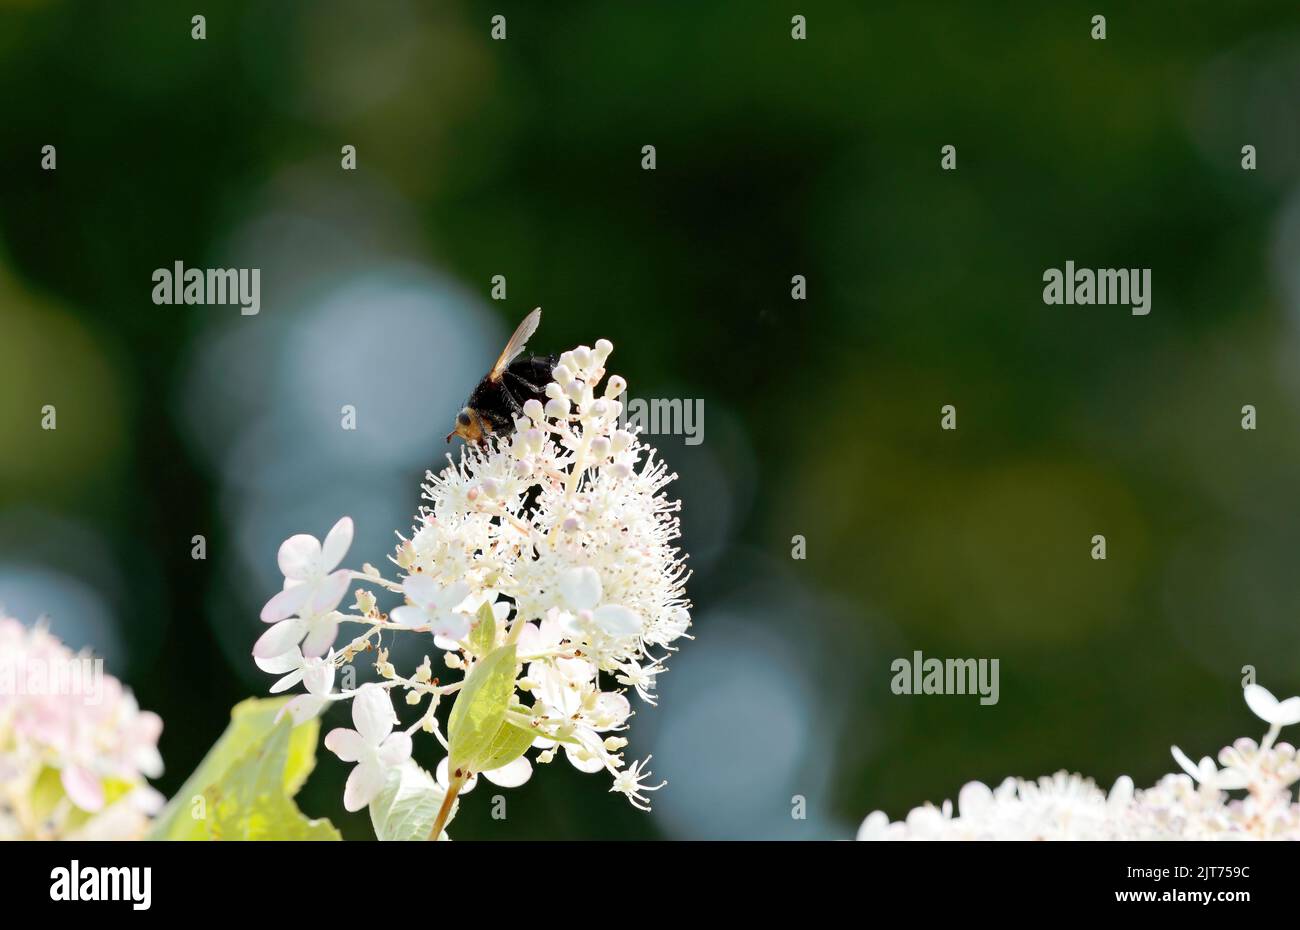 Grande mouche noire avec une tête jaune se nourrissant sur la fleur d'hortensia Banque D'Images